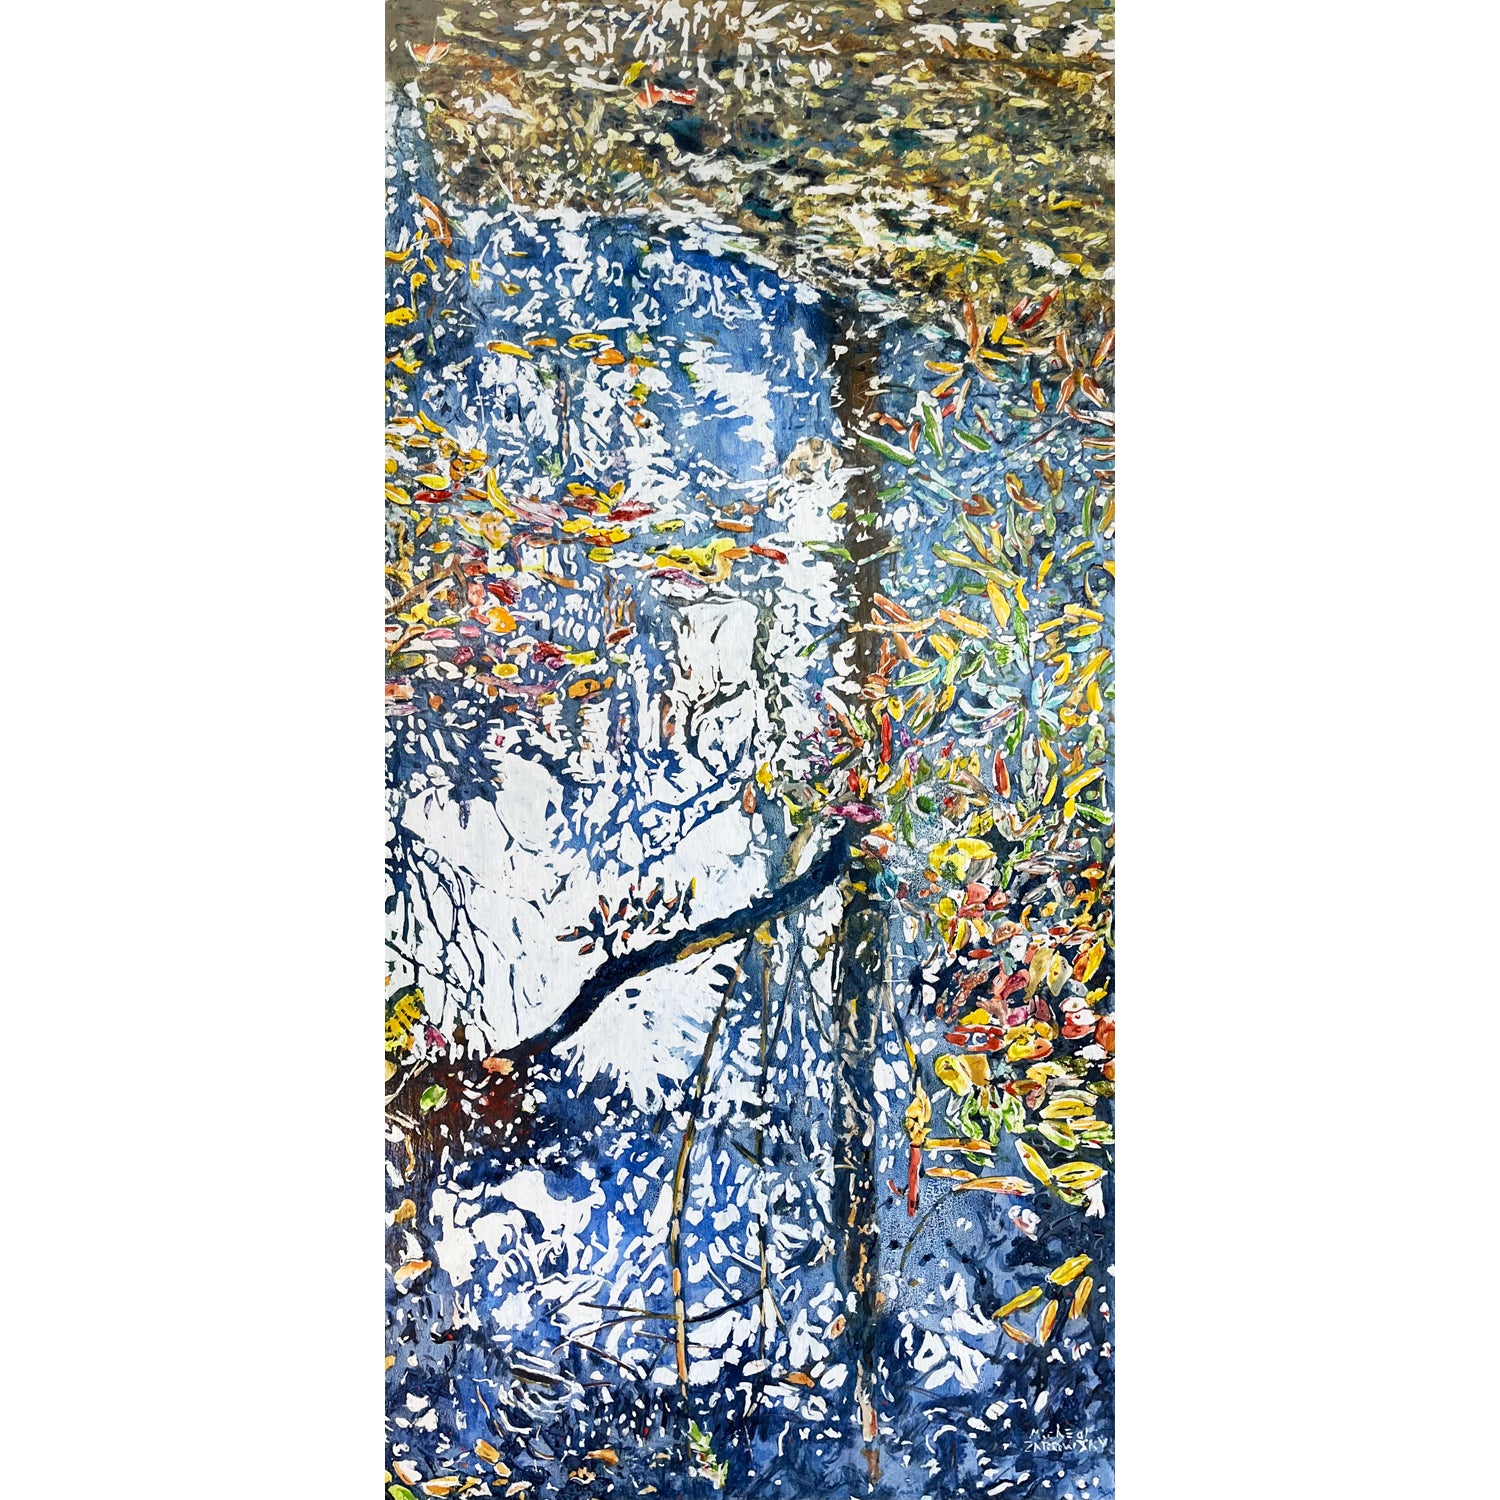 Micheal Zarowsky - Autumn Pond, 48" x 24"